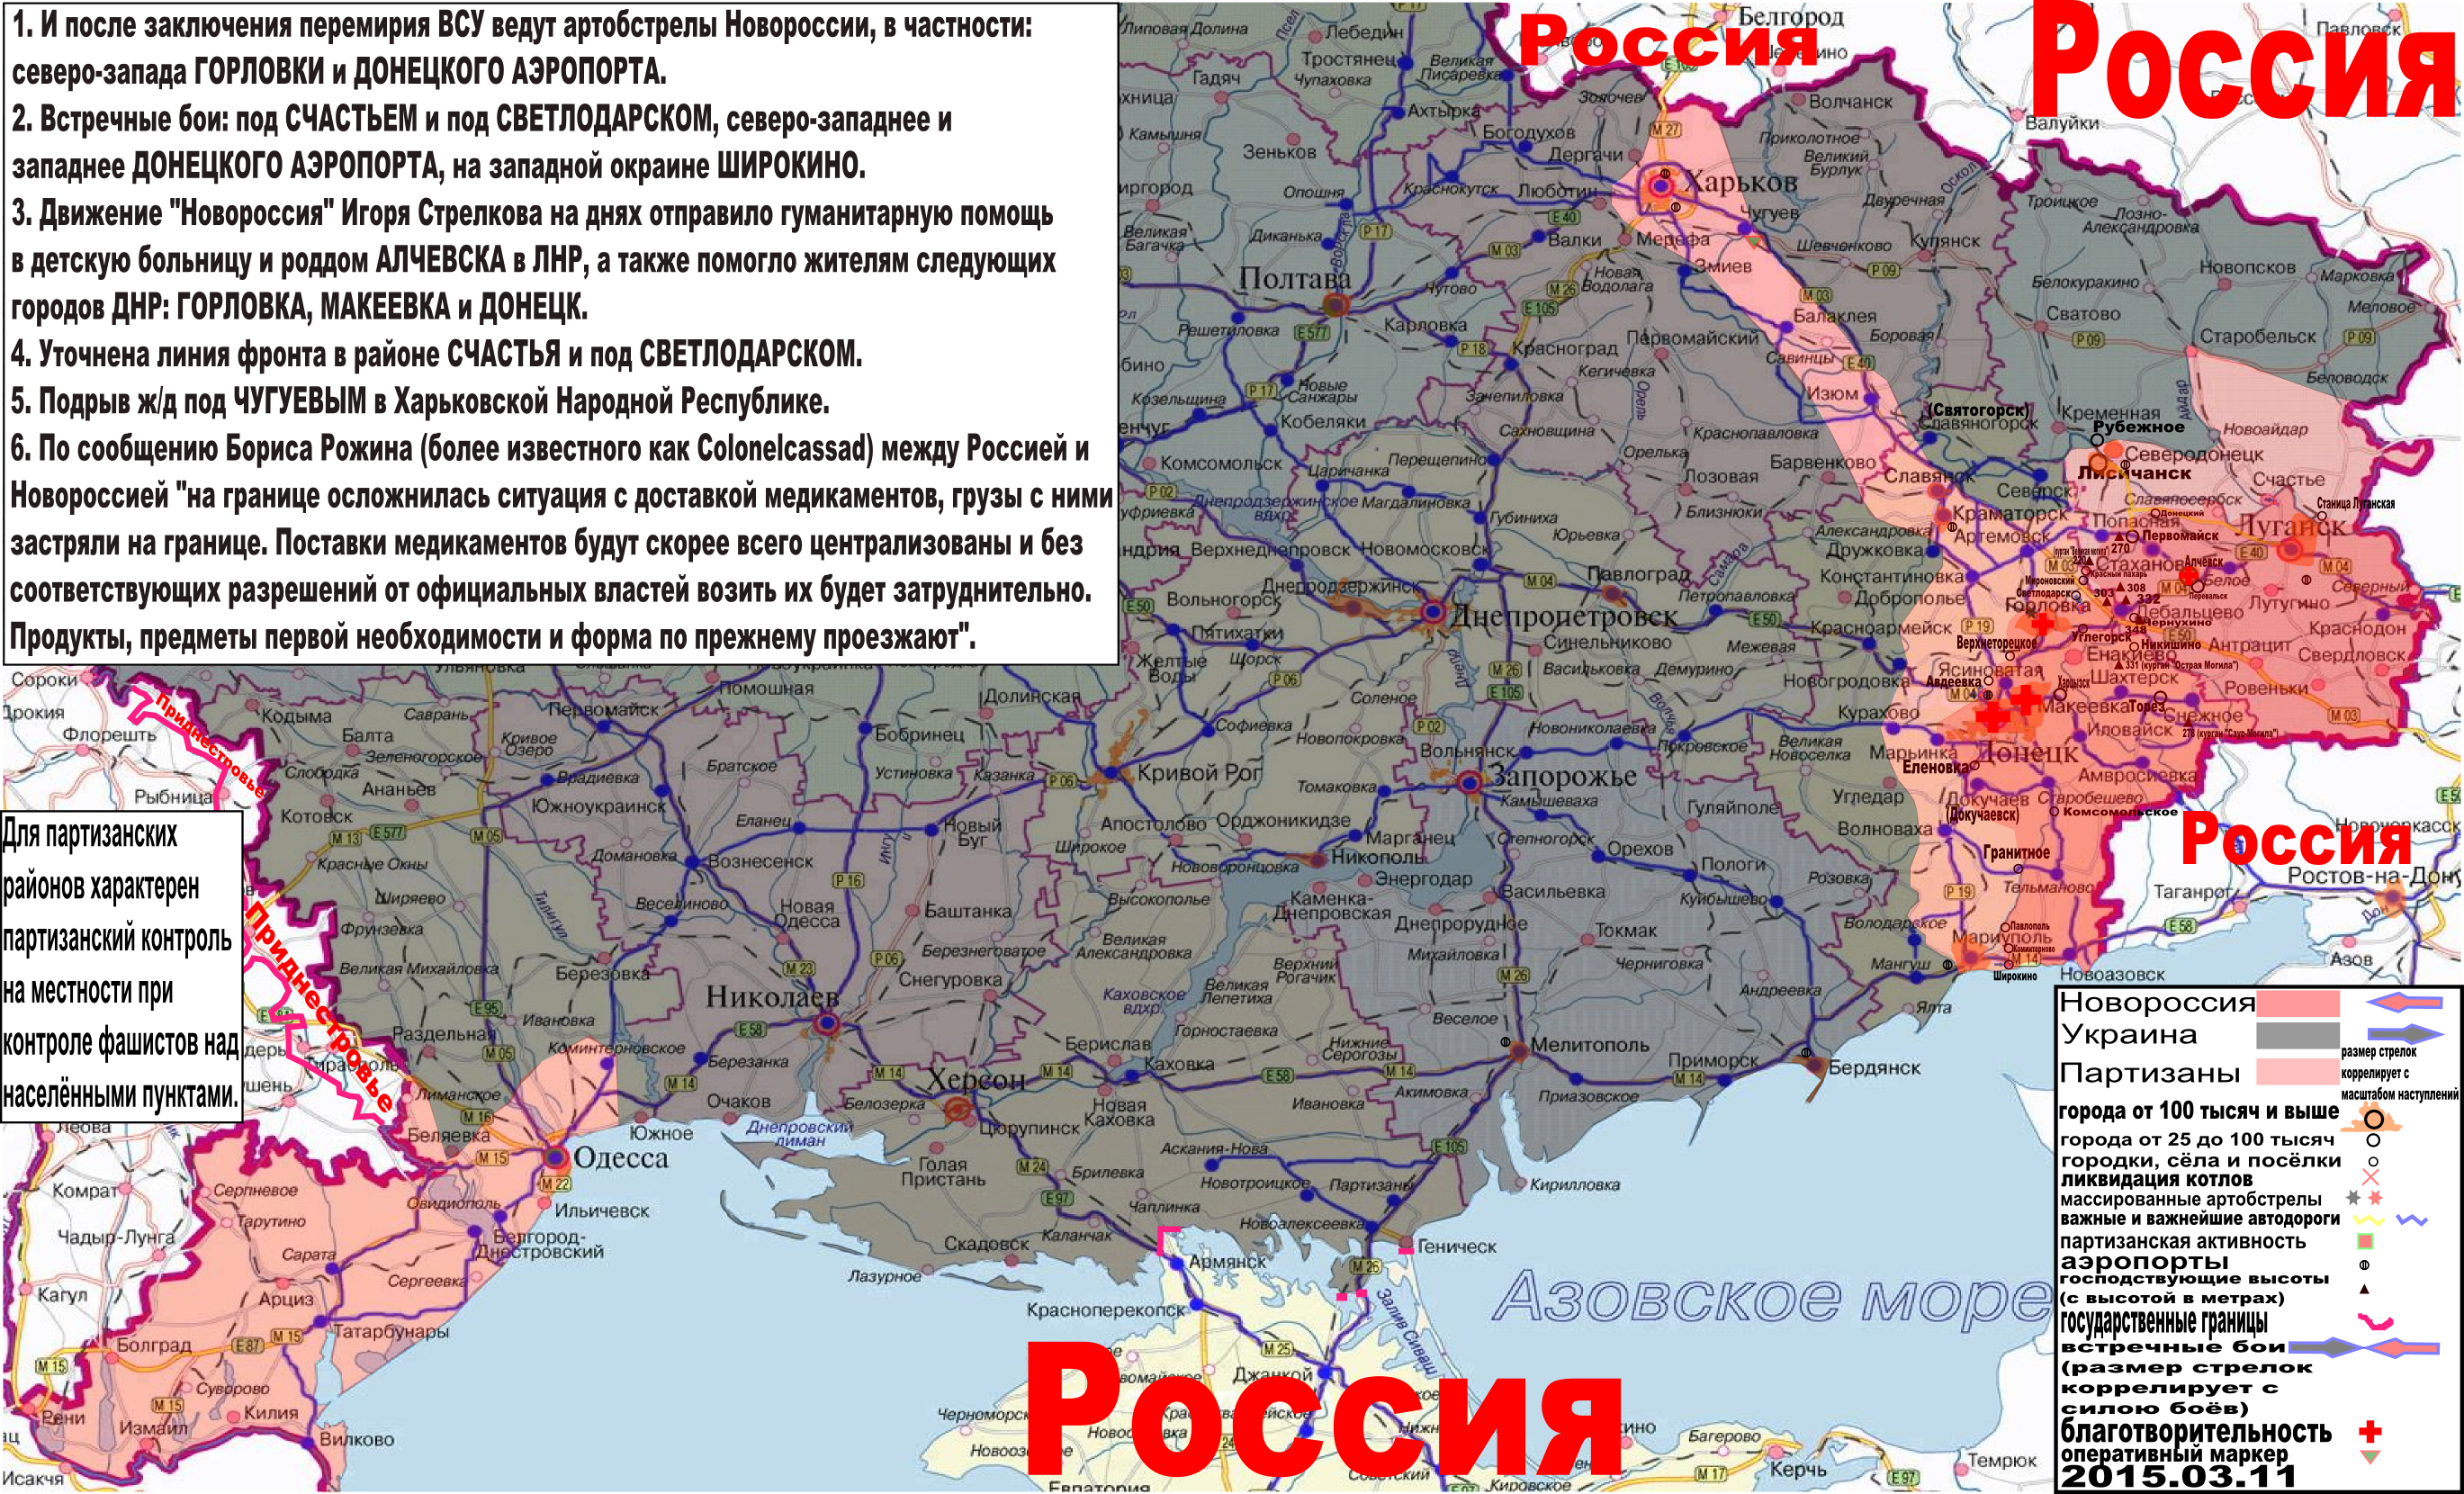 Карта боевых действий и событий в Новороссии с обозначением зон партизанской активности за 11 марта 2015